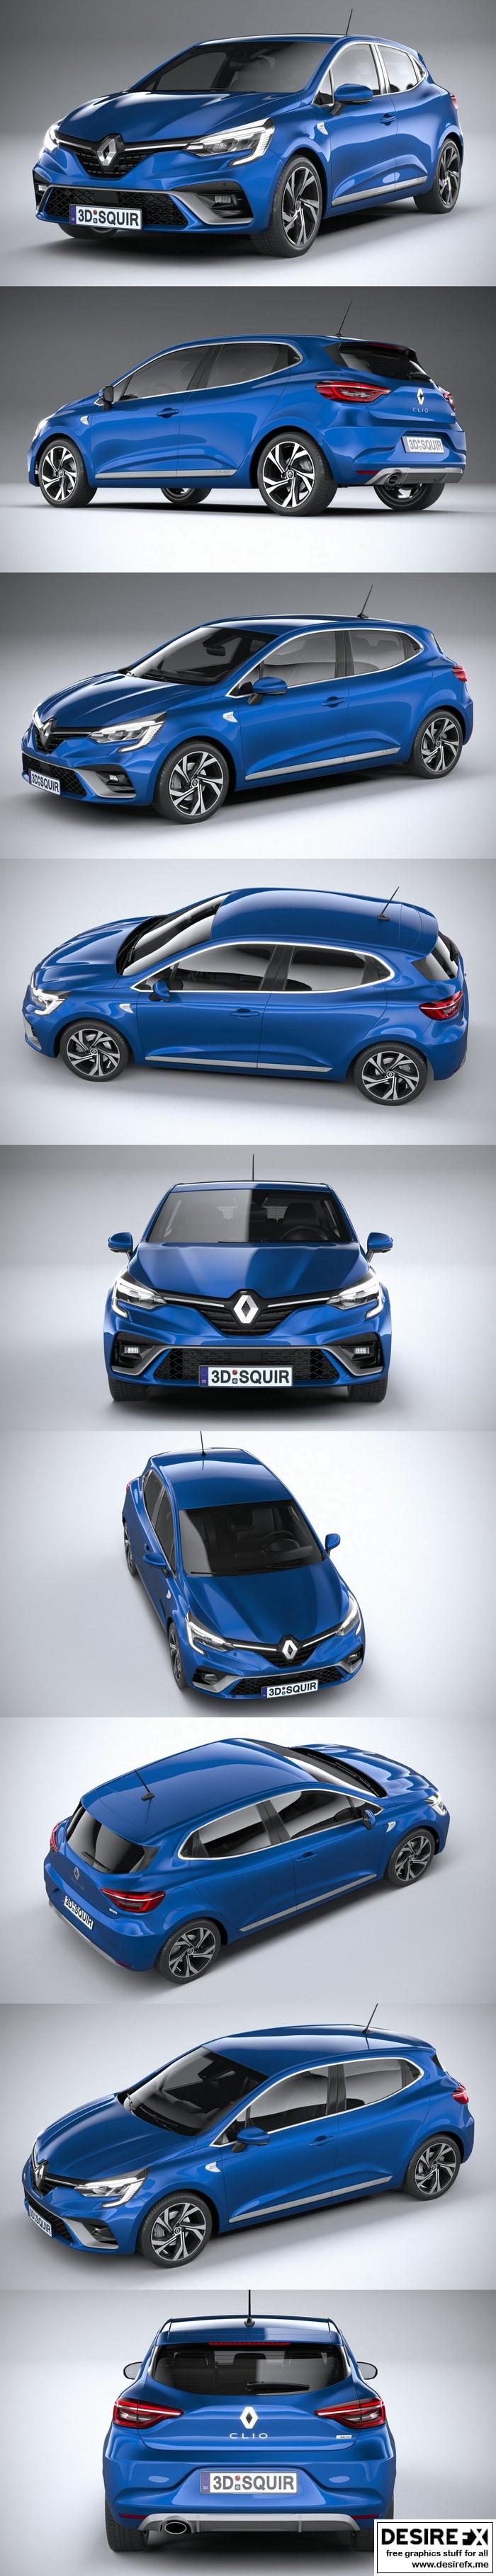 Desire FX 3d models | Renault Clio RS Line 2020